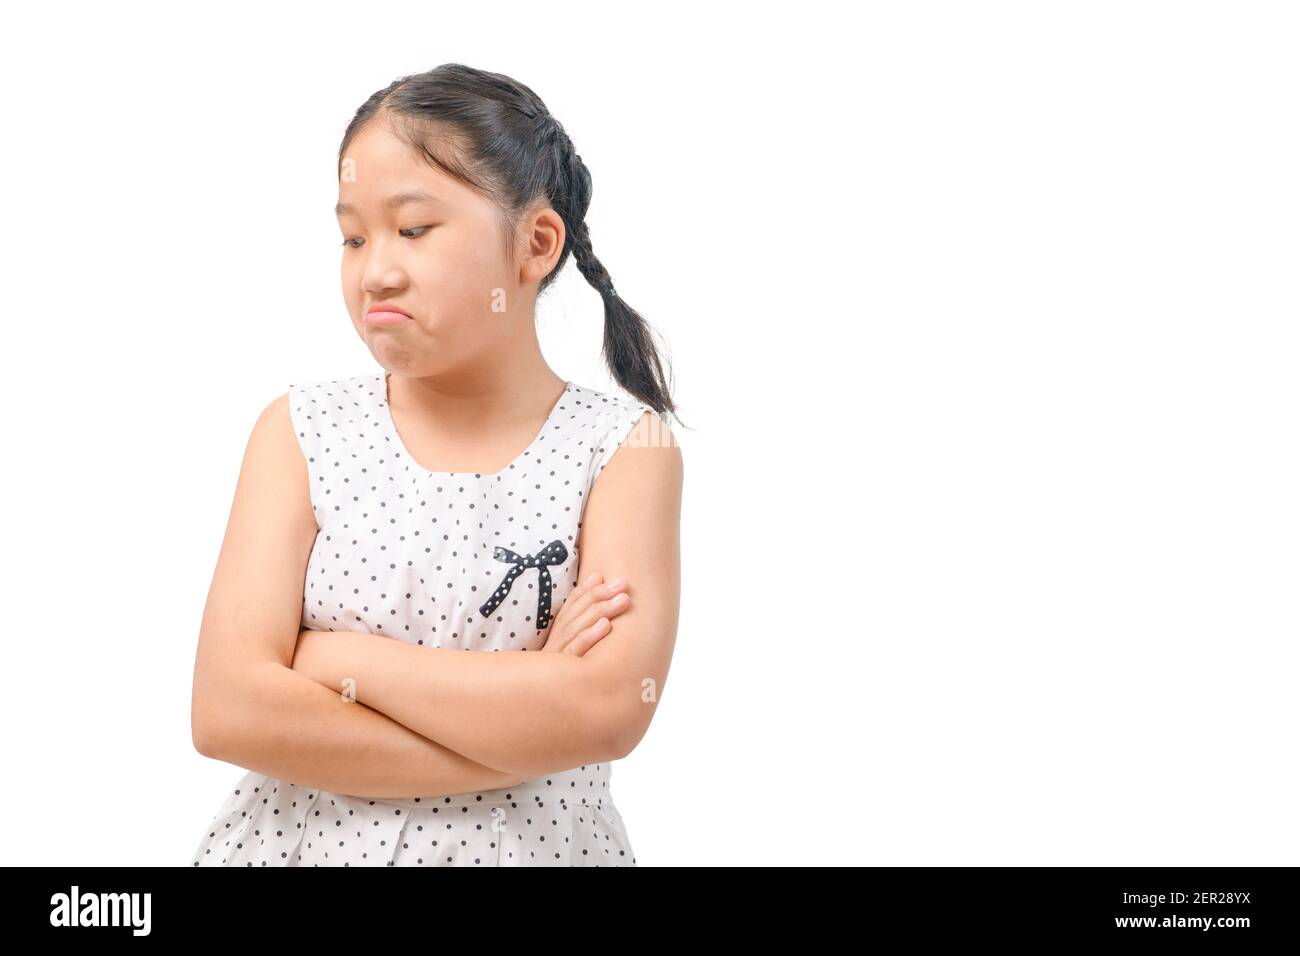 Kid asiatischen Mädchen Gesichtsausdruck Neid, Eifersucht isoliert weißer Hintergrund negativen menschlichen Emotionen Mimik, Körpersprache Stockfoto